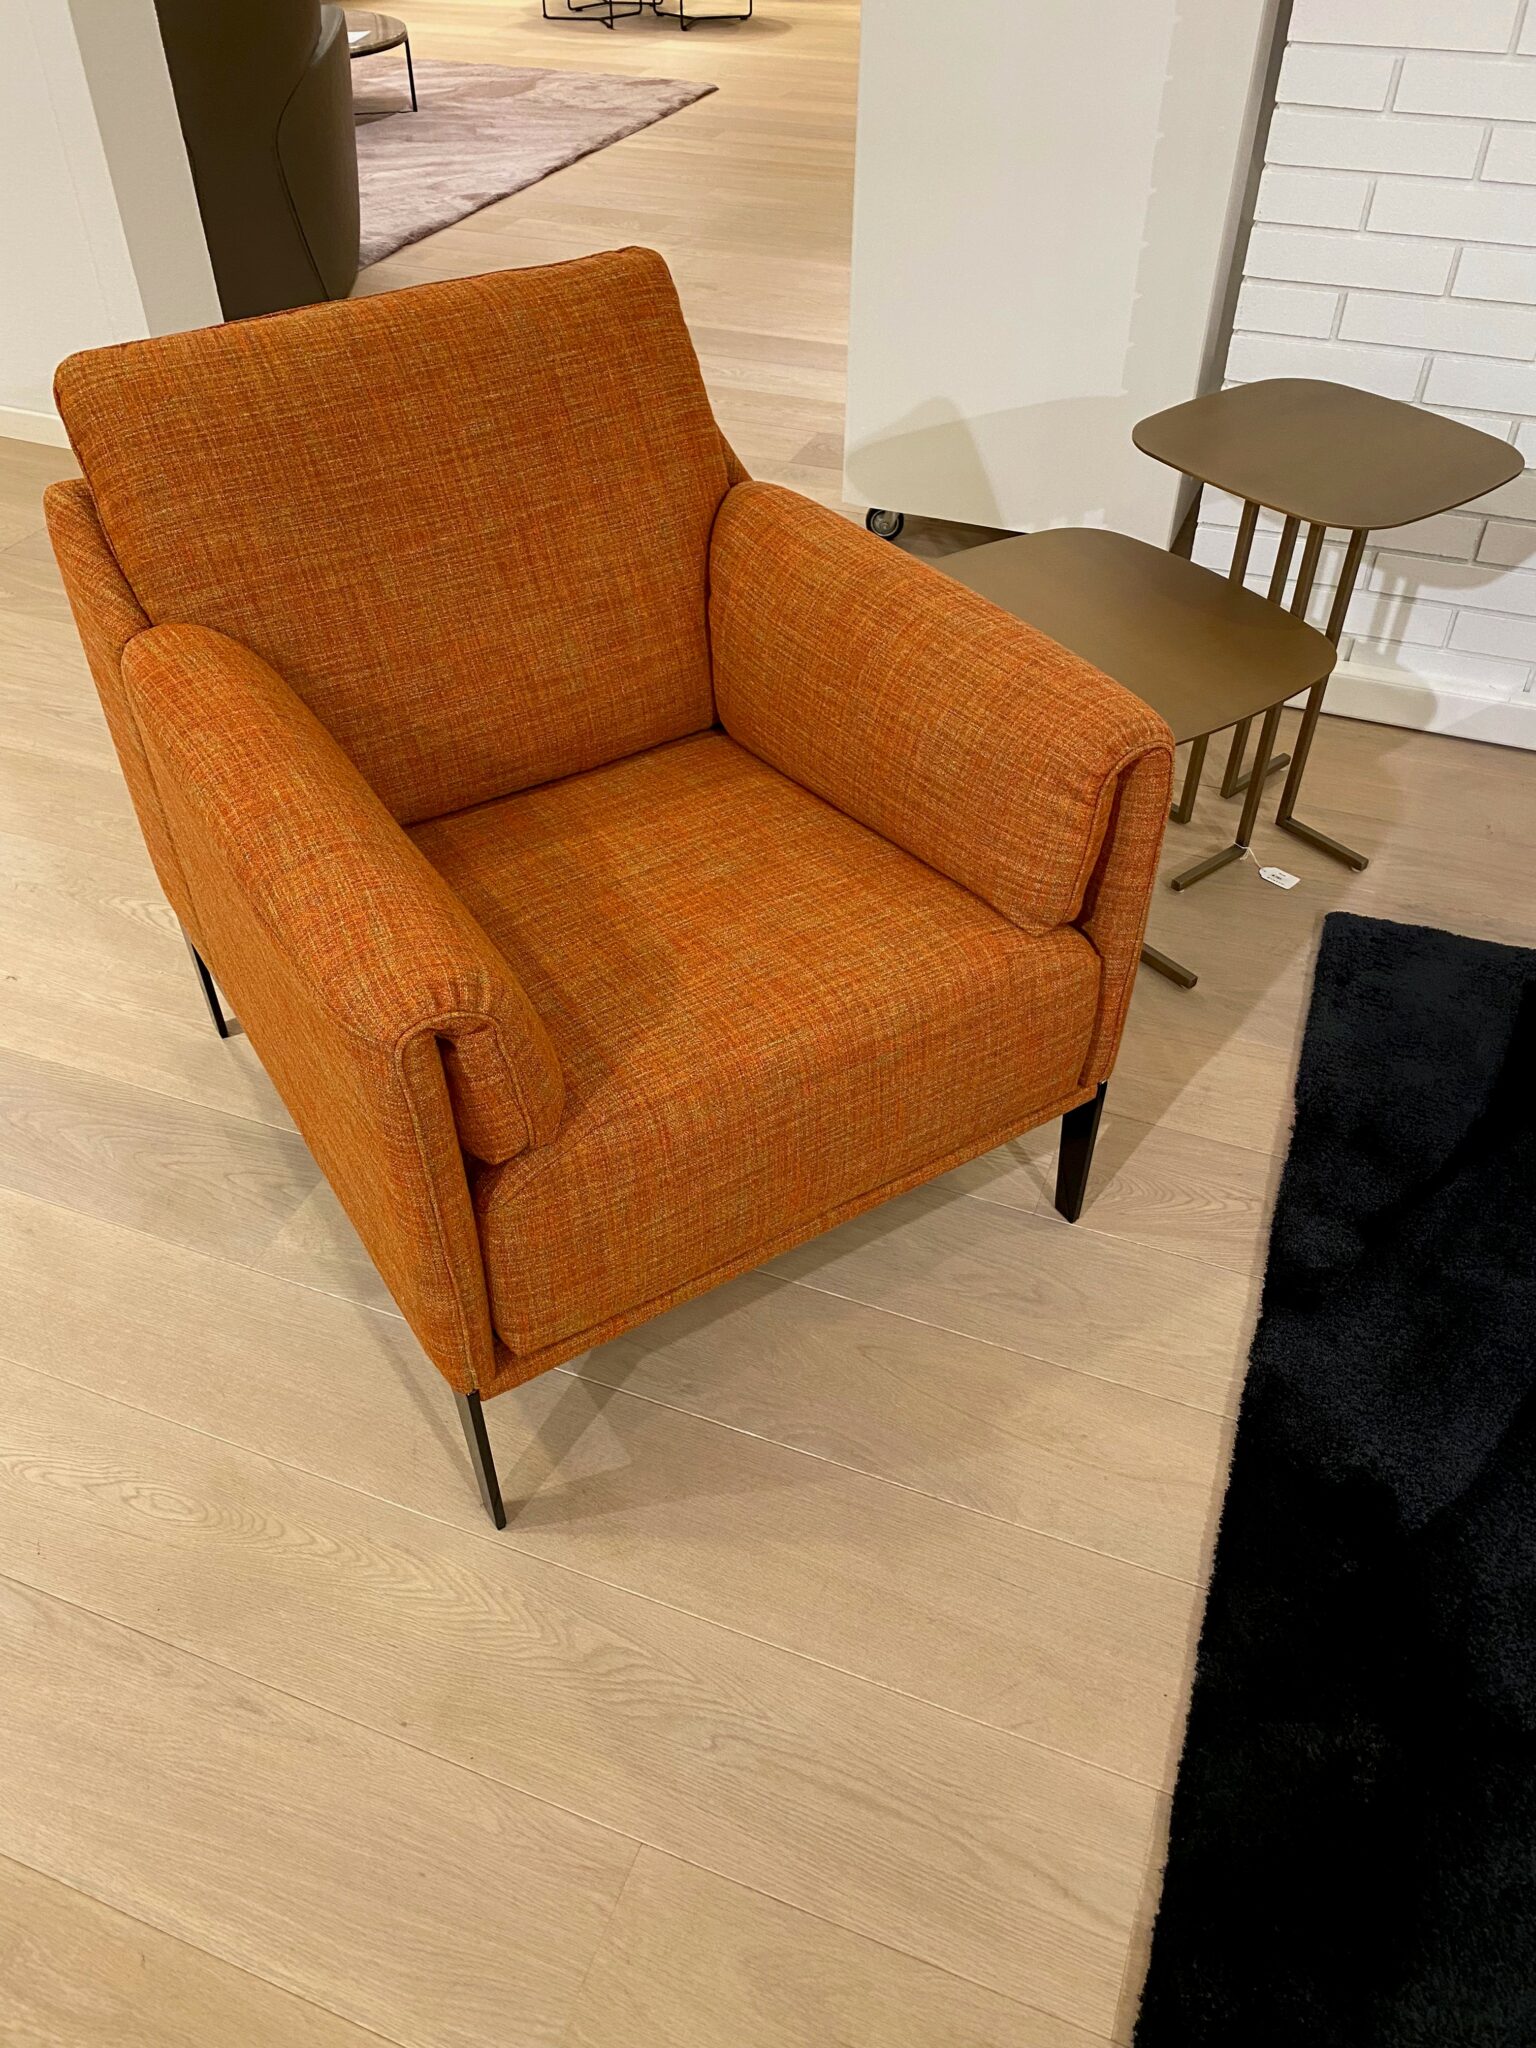 Lederen-fauteuil-Durlet-model-Lima-bekleding-stof